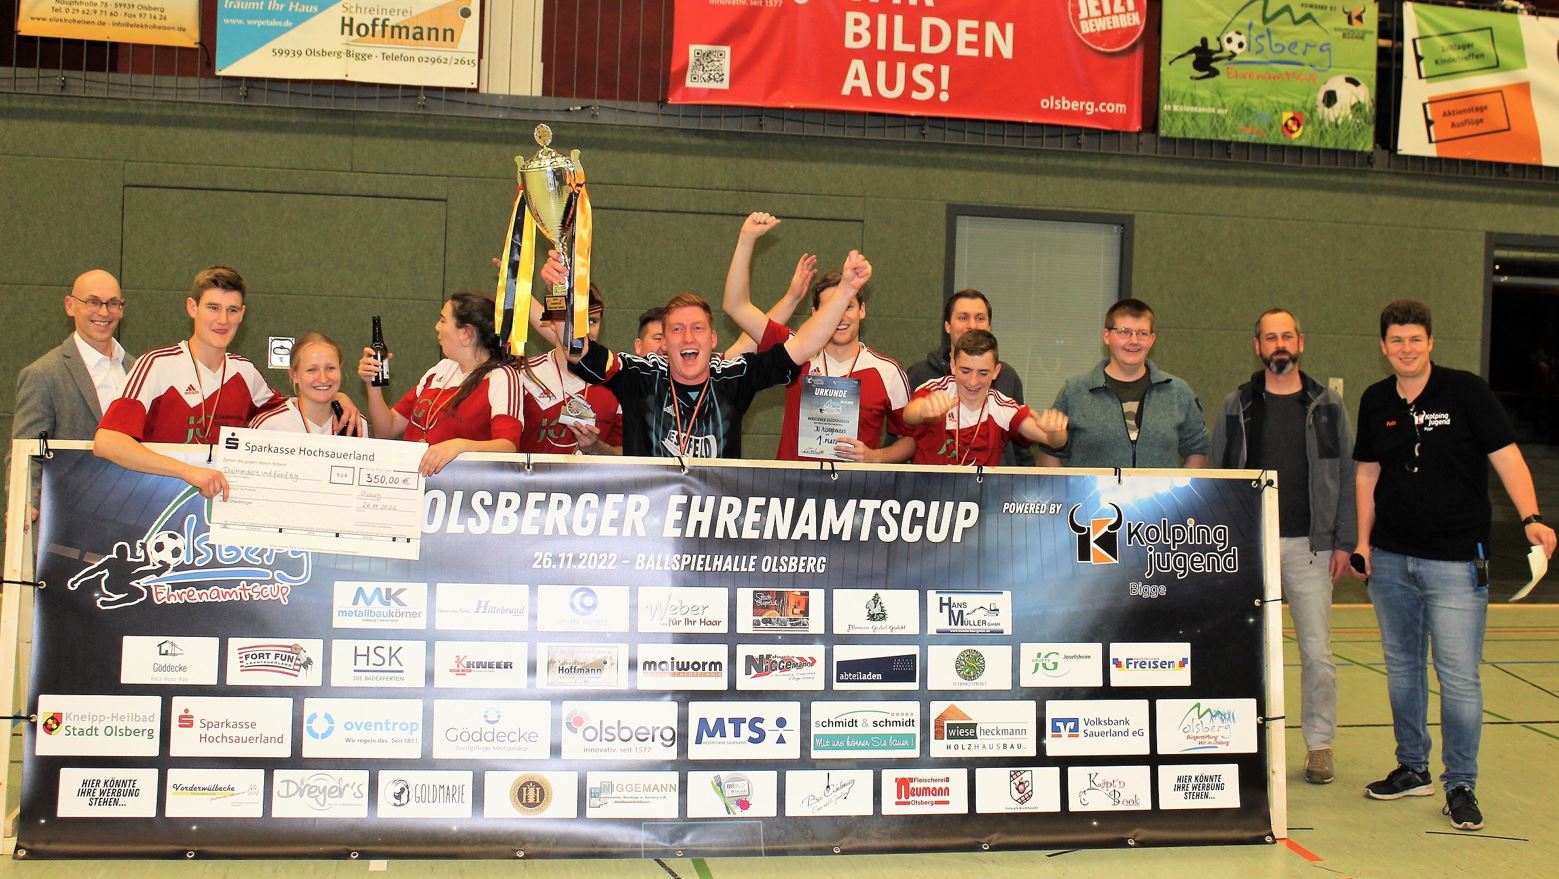 Die Junge Union aus Assinghausen gewann im Jahr 2022. Foto: bigge-online